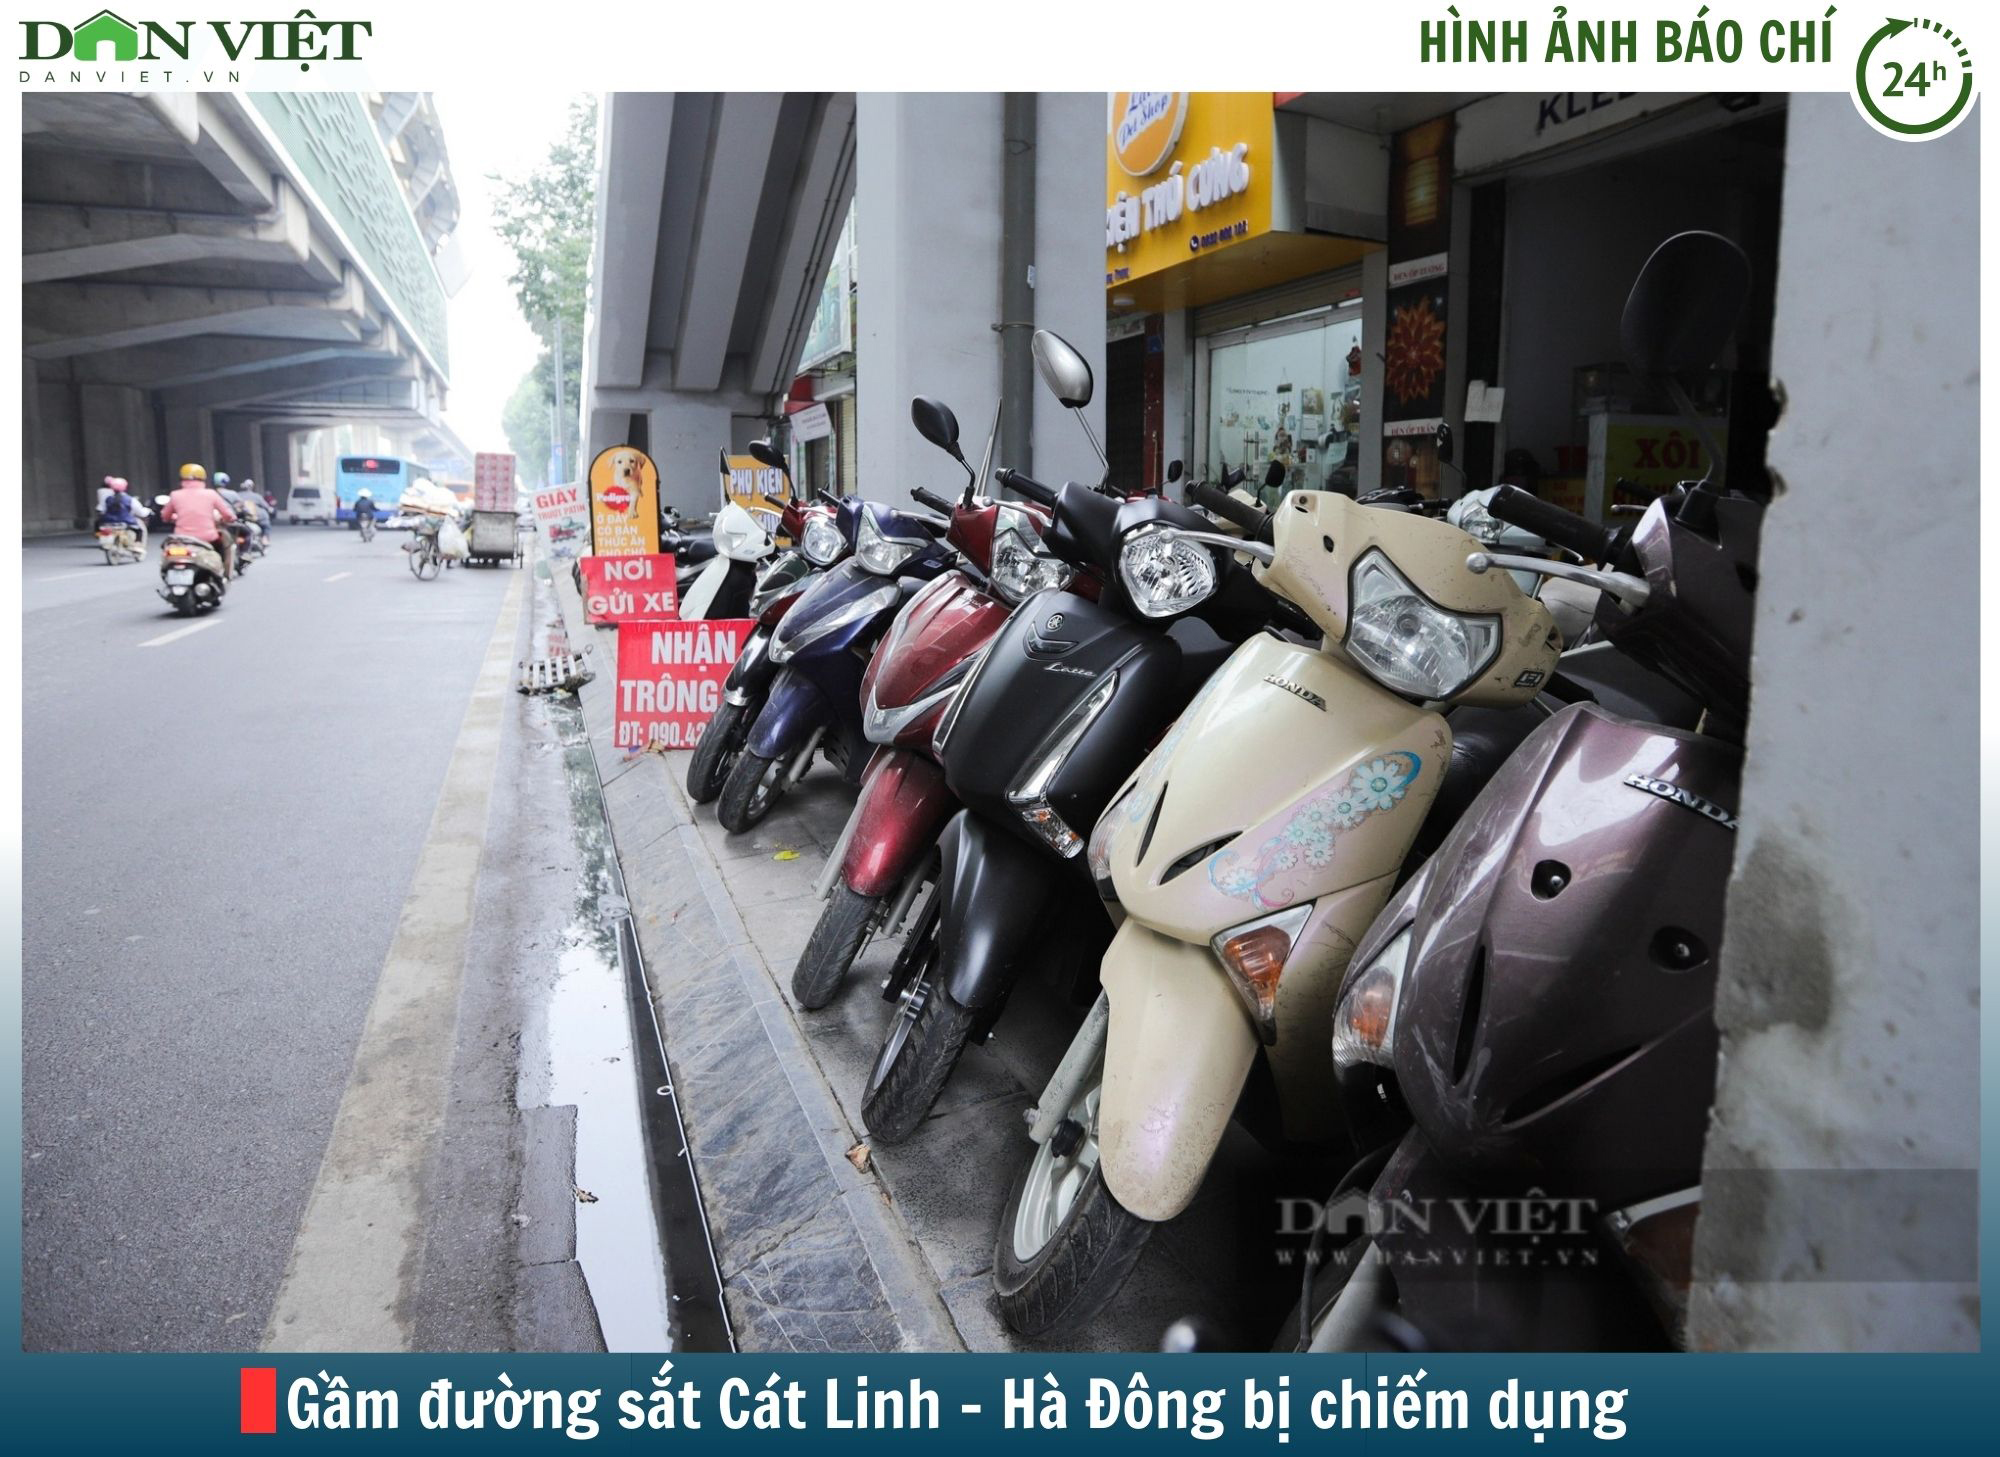 Hình ảnh báo chí 24h: Gầm đường sắt Cát Linh - Hà Đông bị chiếm dụng - Ảnh 1.